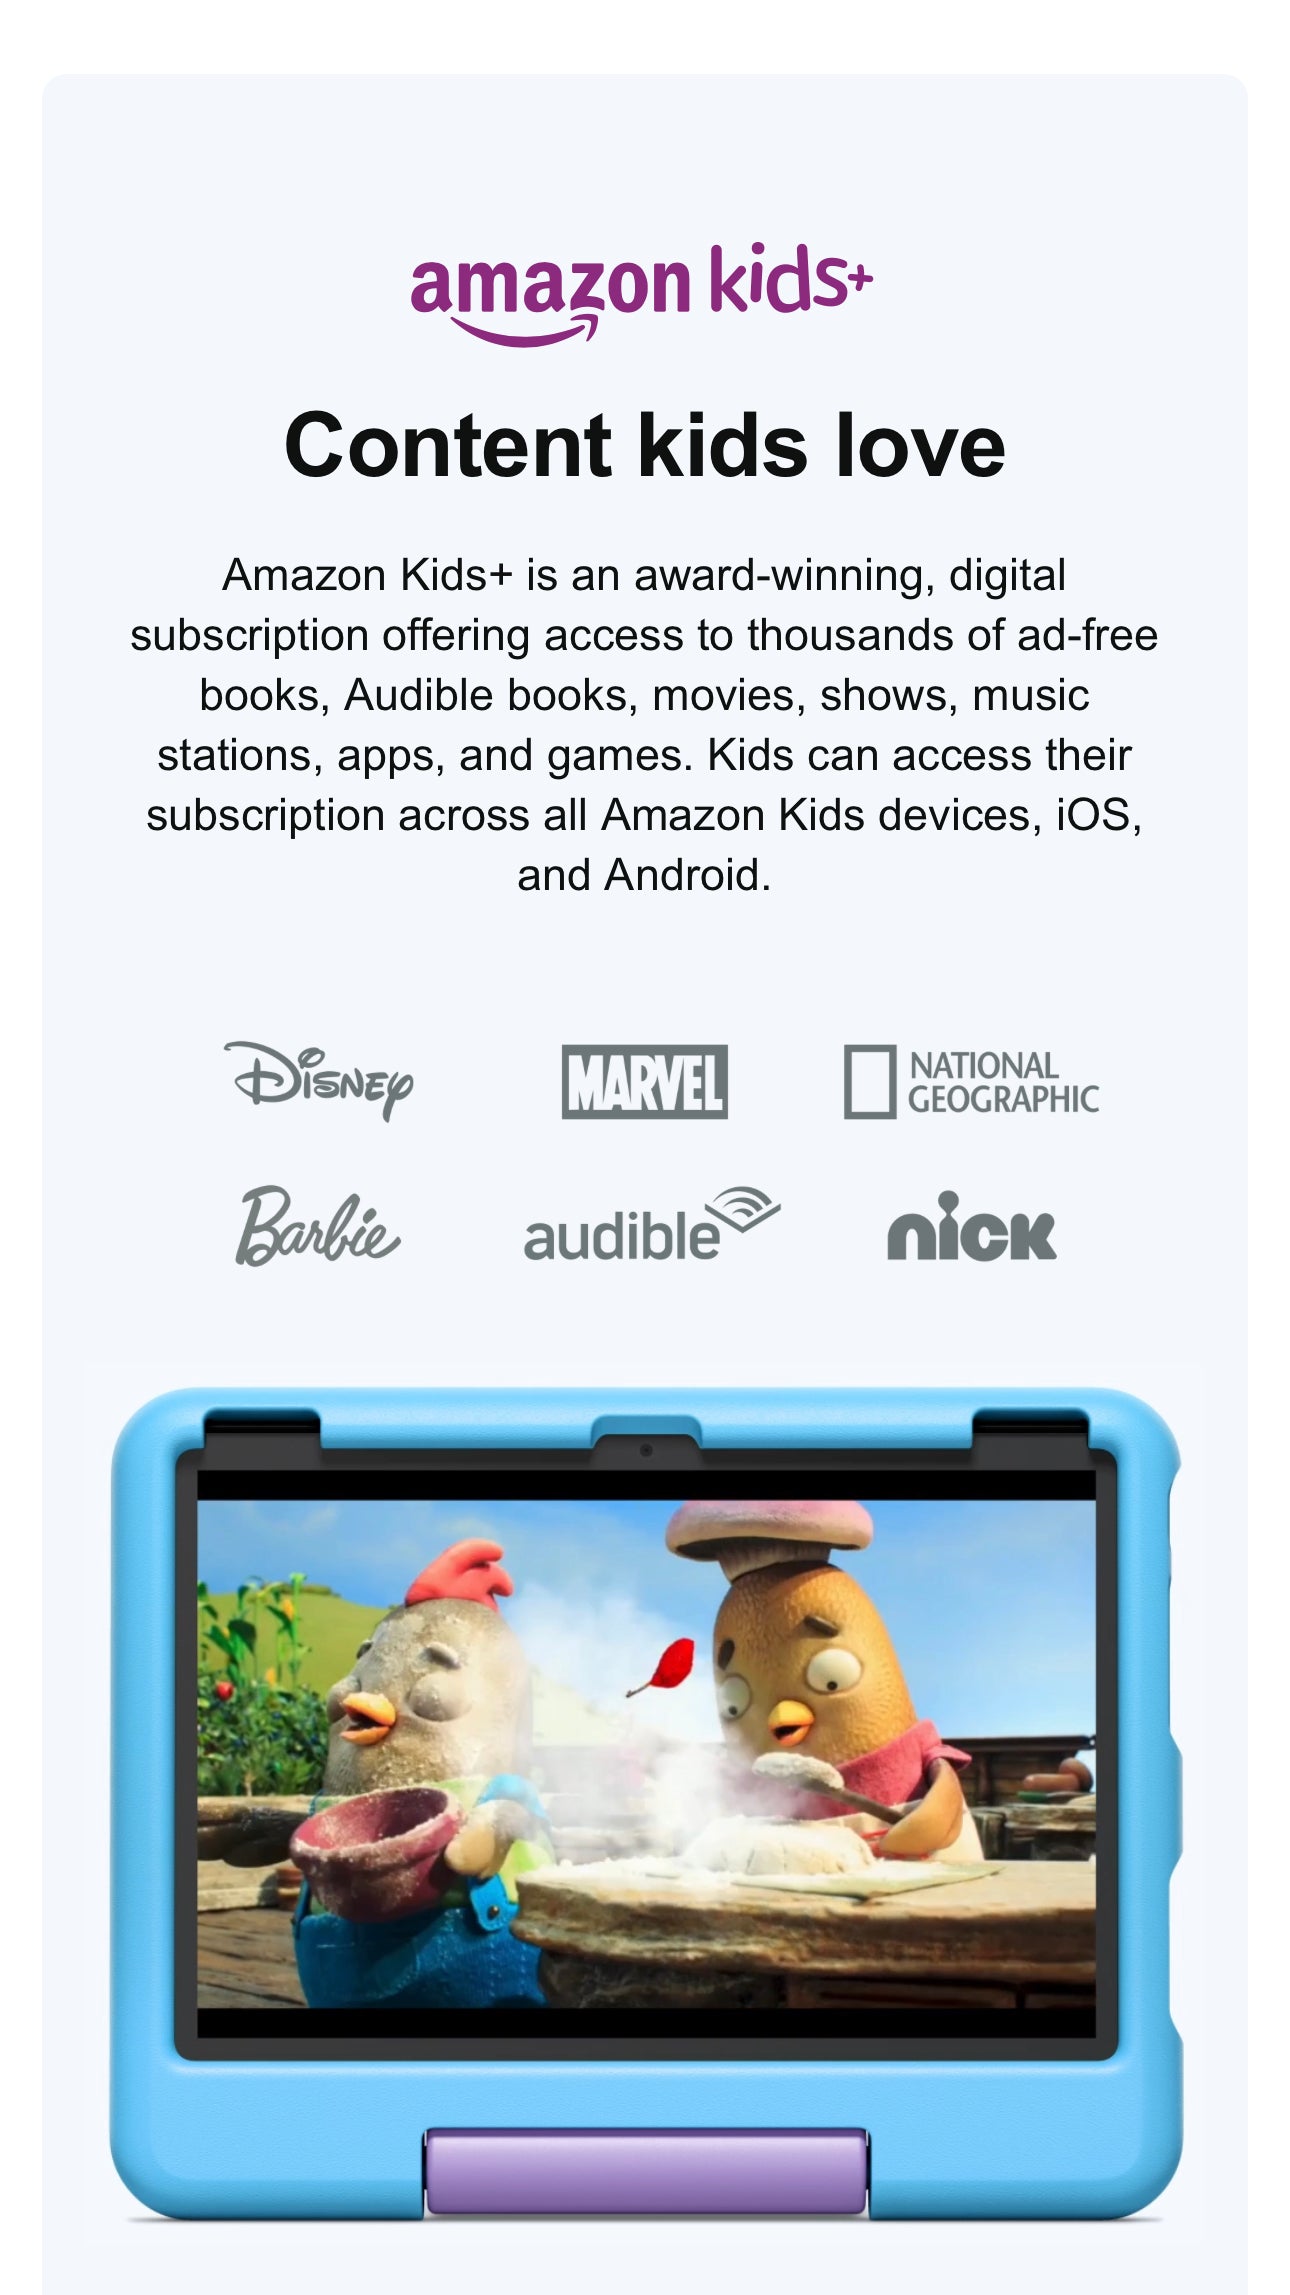 Amazon Fire 10 Kids tablet- Blue